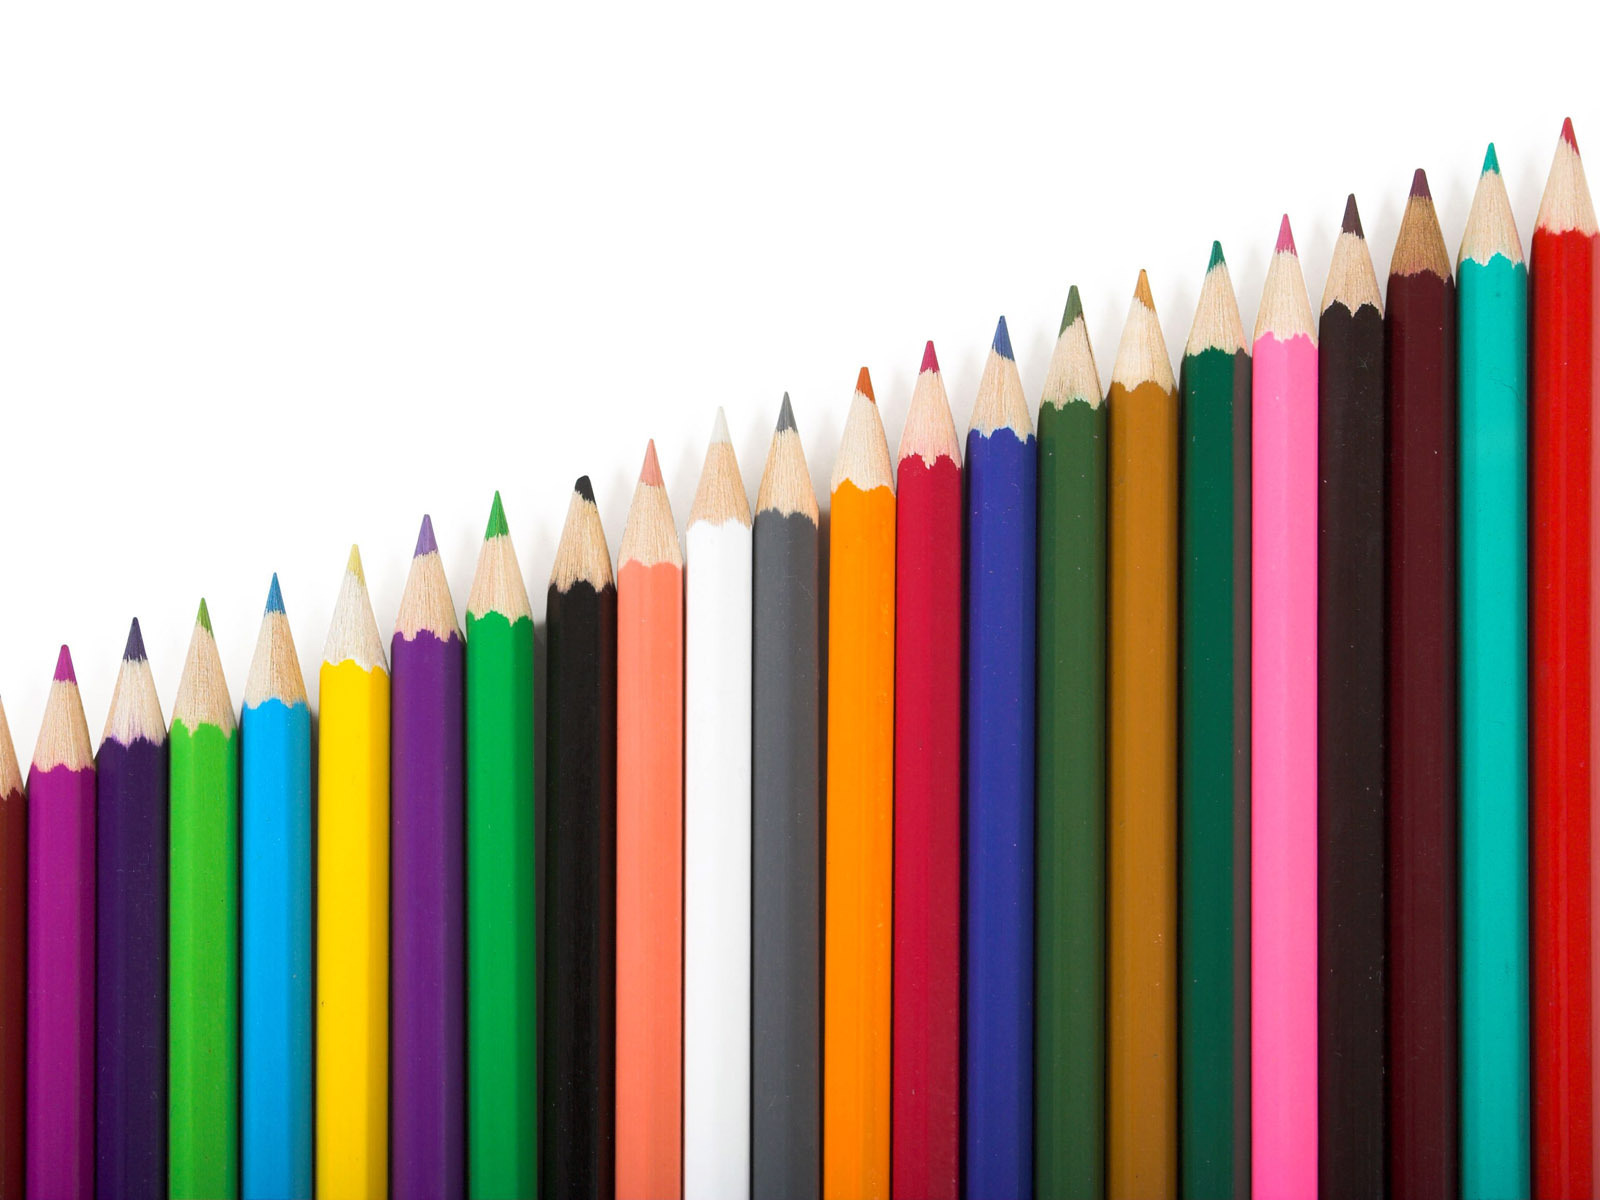 Pencils Colored pencils